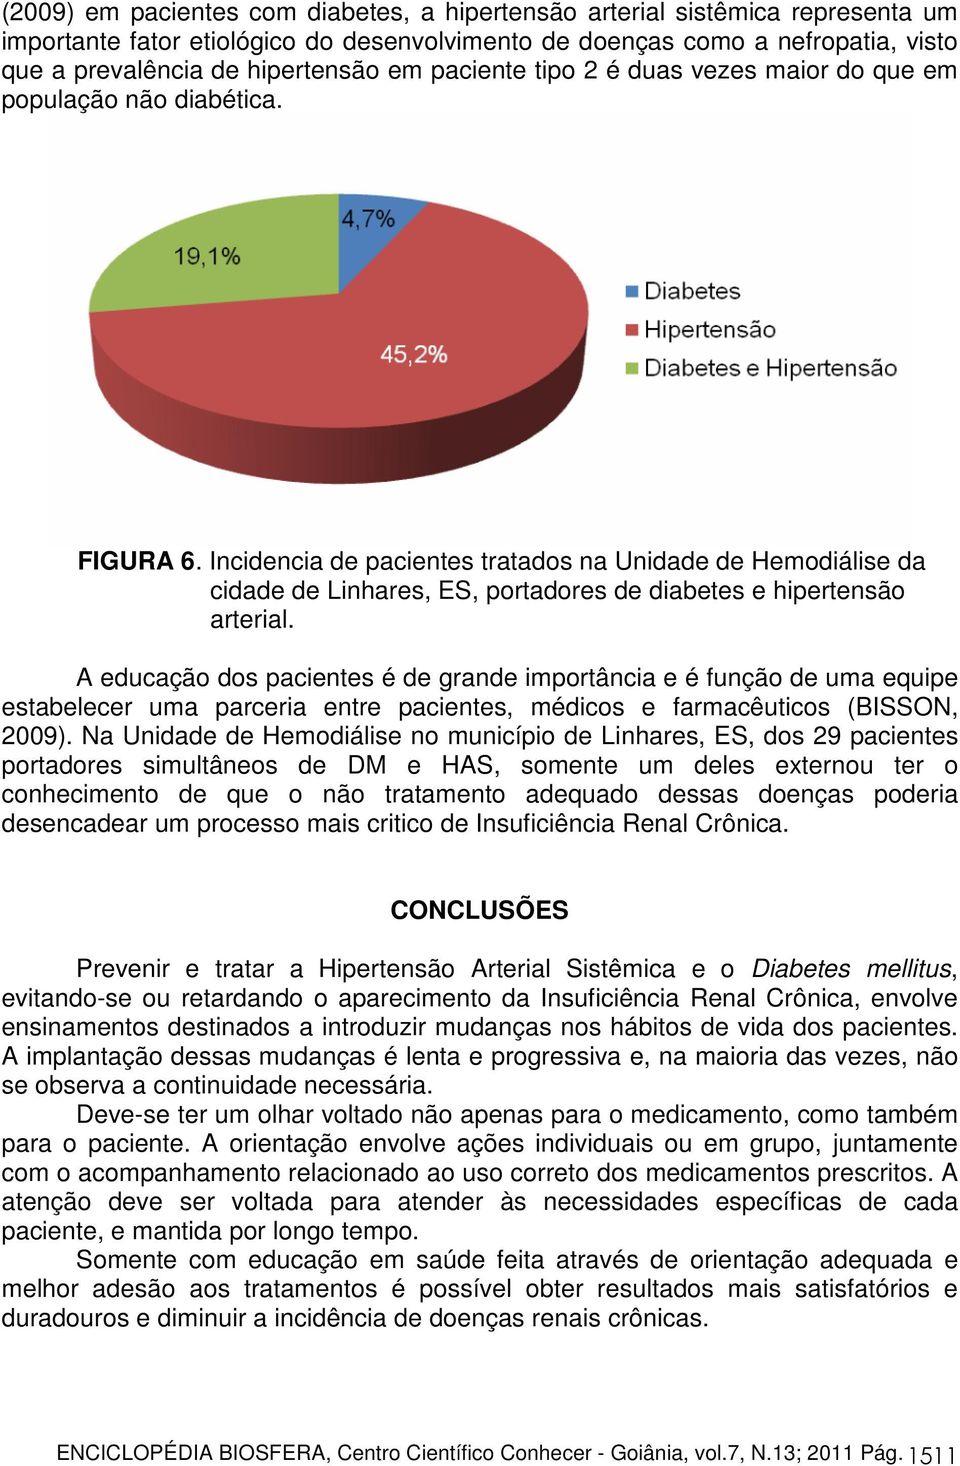 Incidencia de pacientes tratados na Unidade de Hemodiálise da cidade de Linhares, ES, portadores de diabetes e hipertensão arterial.